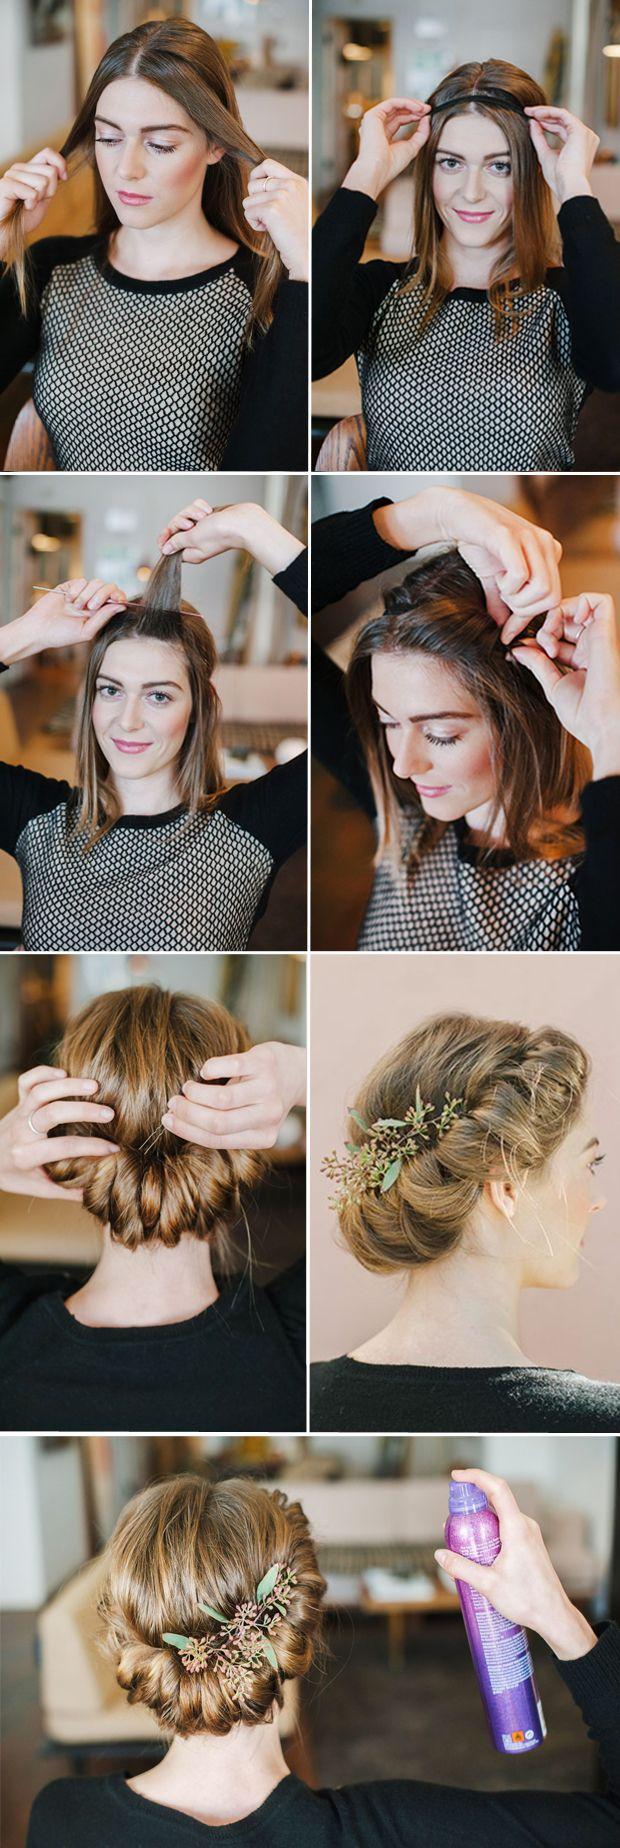 Wedding - 10 Best DIY Wedding Hairstyles With Tutorials